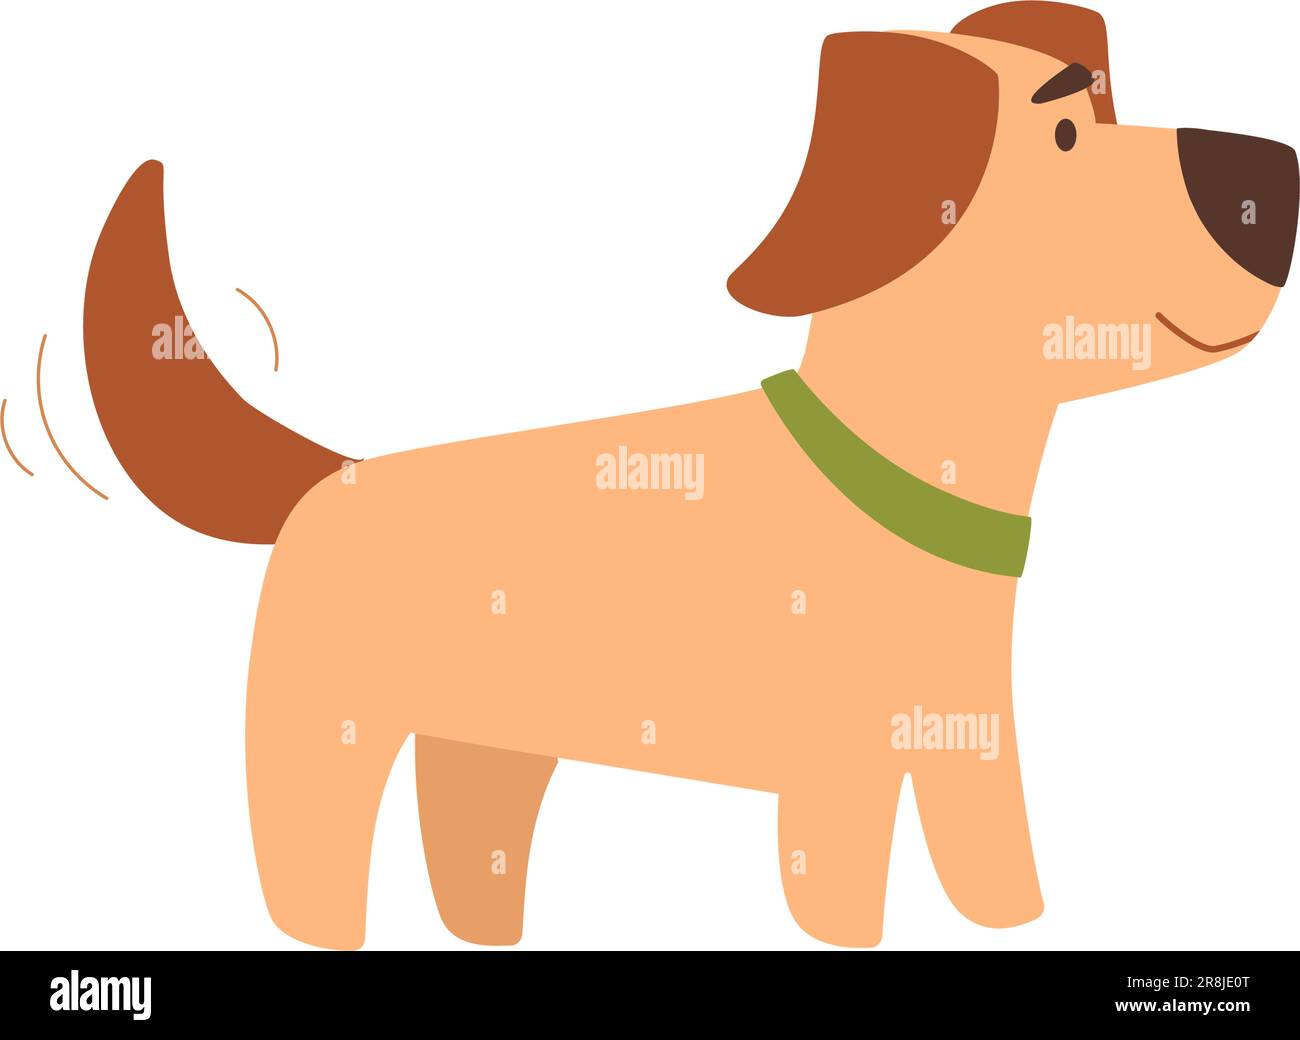 Illustration vectorielle d'un terrier Jack russell en profil. Petit chien drôle avec des oreilles moelleuses. Style plat, personnage de dessin animé de couleur marron, isolé Illustration de Vecteur